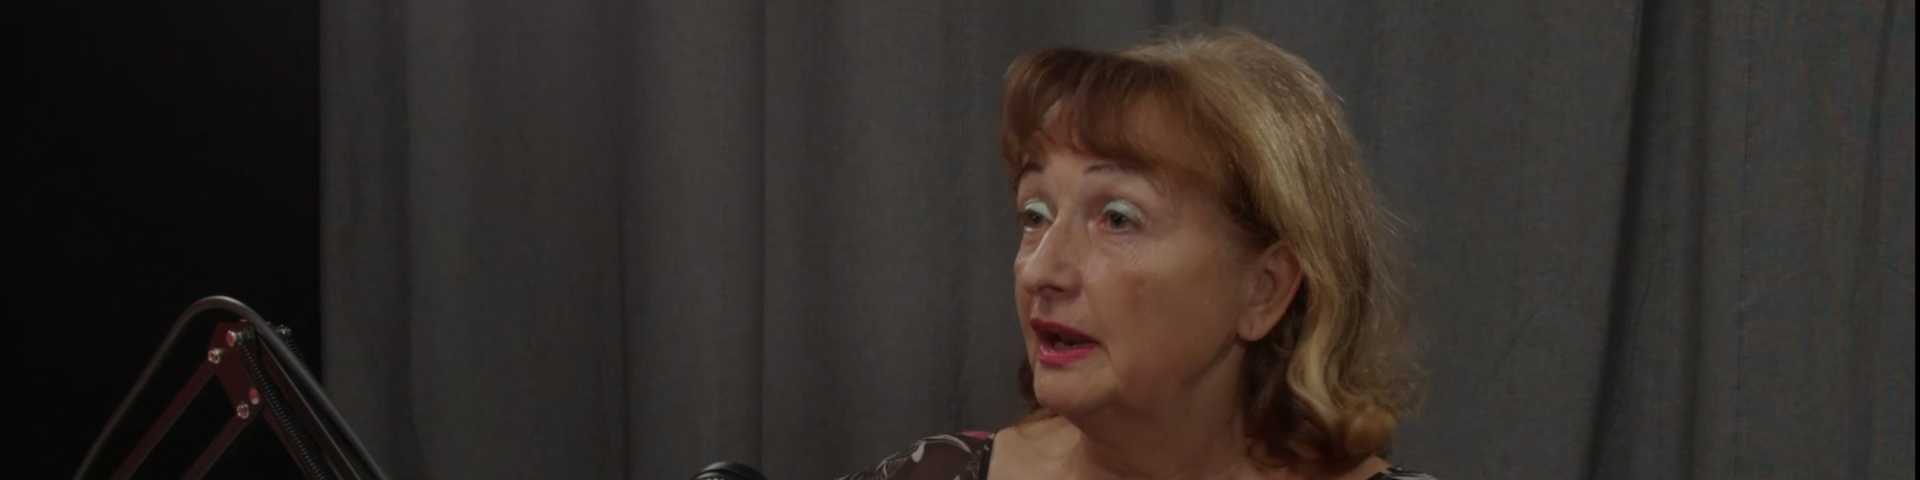 Ружа Ћирковић: Где има професионалног задовољства, биће и плате 